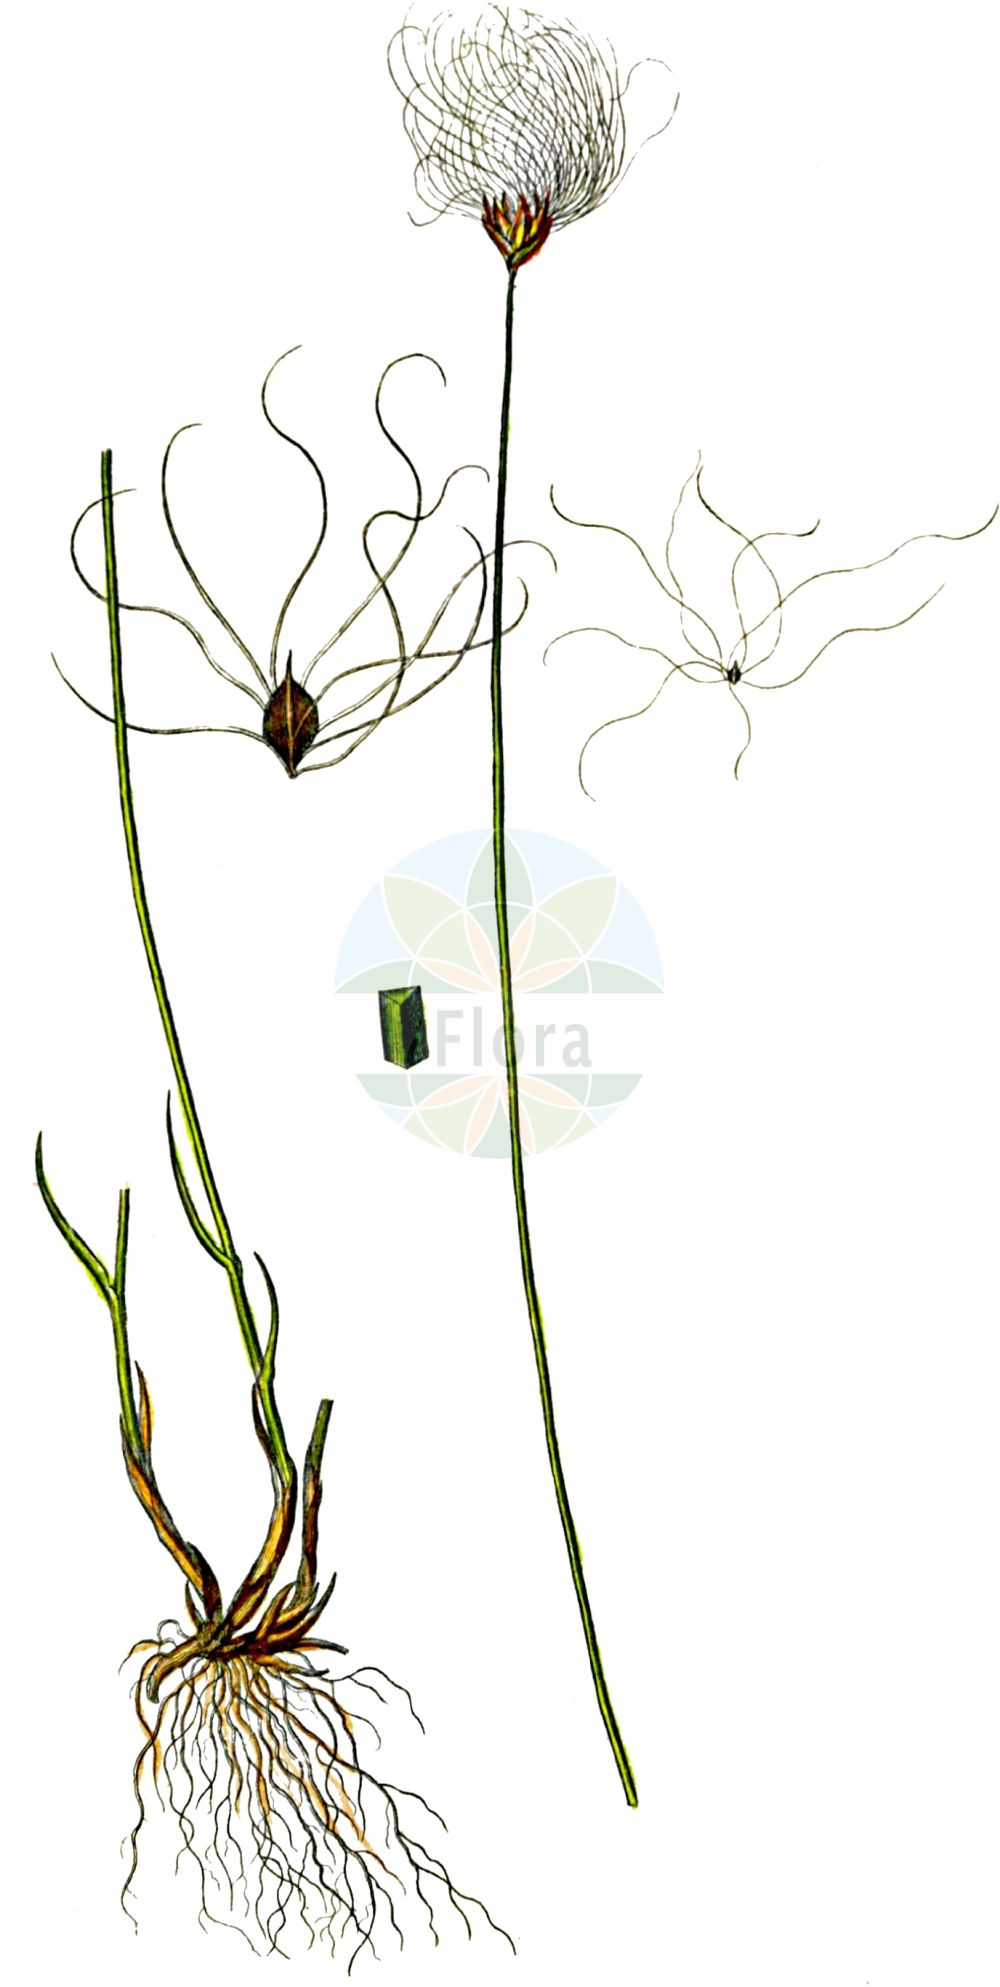 Historische Abbildung von Trichophorum alpinum (Alpen-Rasenbinse - Cotton Deergrass). Das Bild zeigt Blatt, Bluete, Frucht und Same. ---- Historical Drawing of Trichophorum alpinum (Alpen-Rasenbinse - Cotton Deergrass). The image is showing leaf, flower, fruit and seed.(Trichophorum alpinum,Alpen-Rasenbinse,Cotton Deergrass,Eriophorum alpinum,Scirpus hudsonianus,Trichophorum alpinum,Alpen-Rasenbinse,Alpen-Haarsimse,Alpen-Wollgras,Cotton Deergrass,Alpine Deergrass,Alpine Bulrush,Trichophorum,Rasenbinse,Bulrush,Cyperaceae,Sauergräser,Sedge family,Blatt,Bluete,Frucht,Same,leaf,flower,fruit,seed,Oeder (1761-1883))